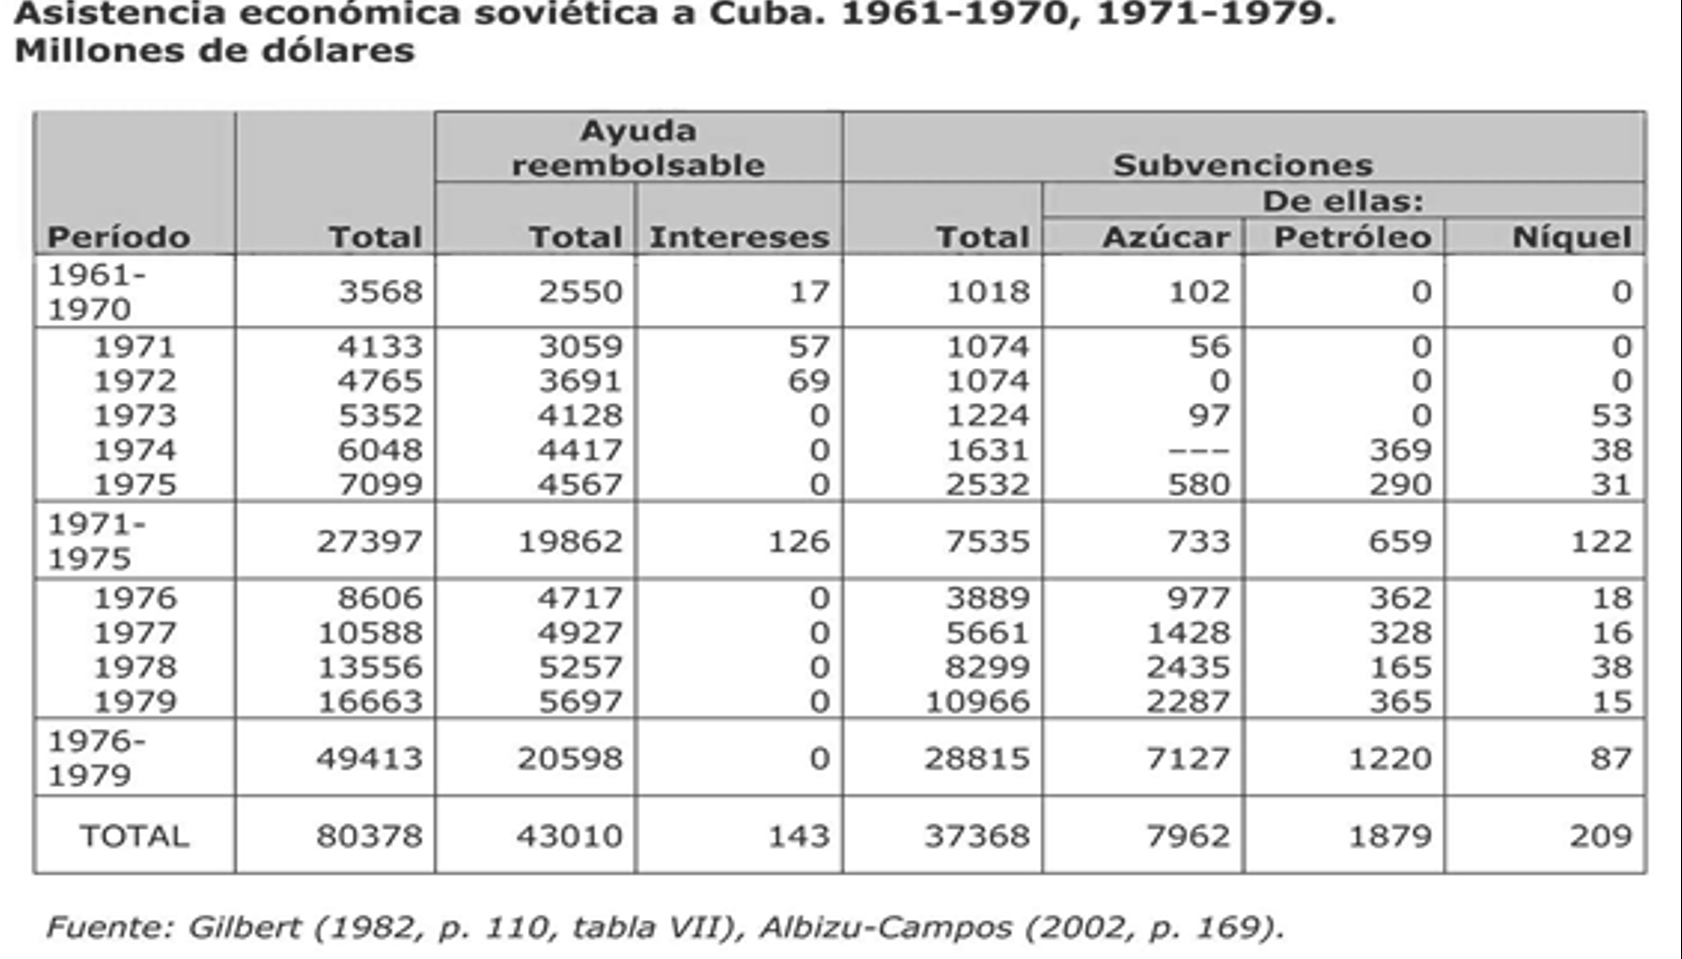 Asistencia económica soviética a Cuba de 1961-1970 y de 1971-1979 en millones de dolares